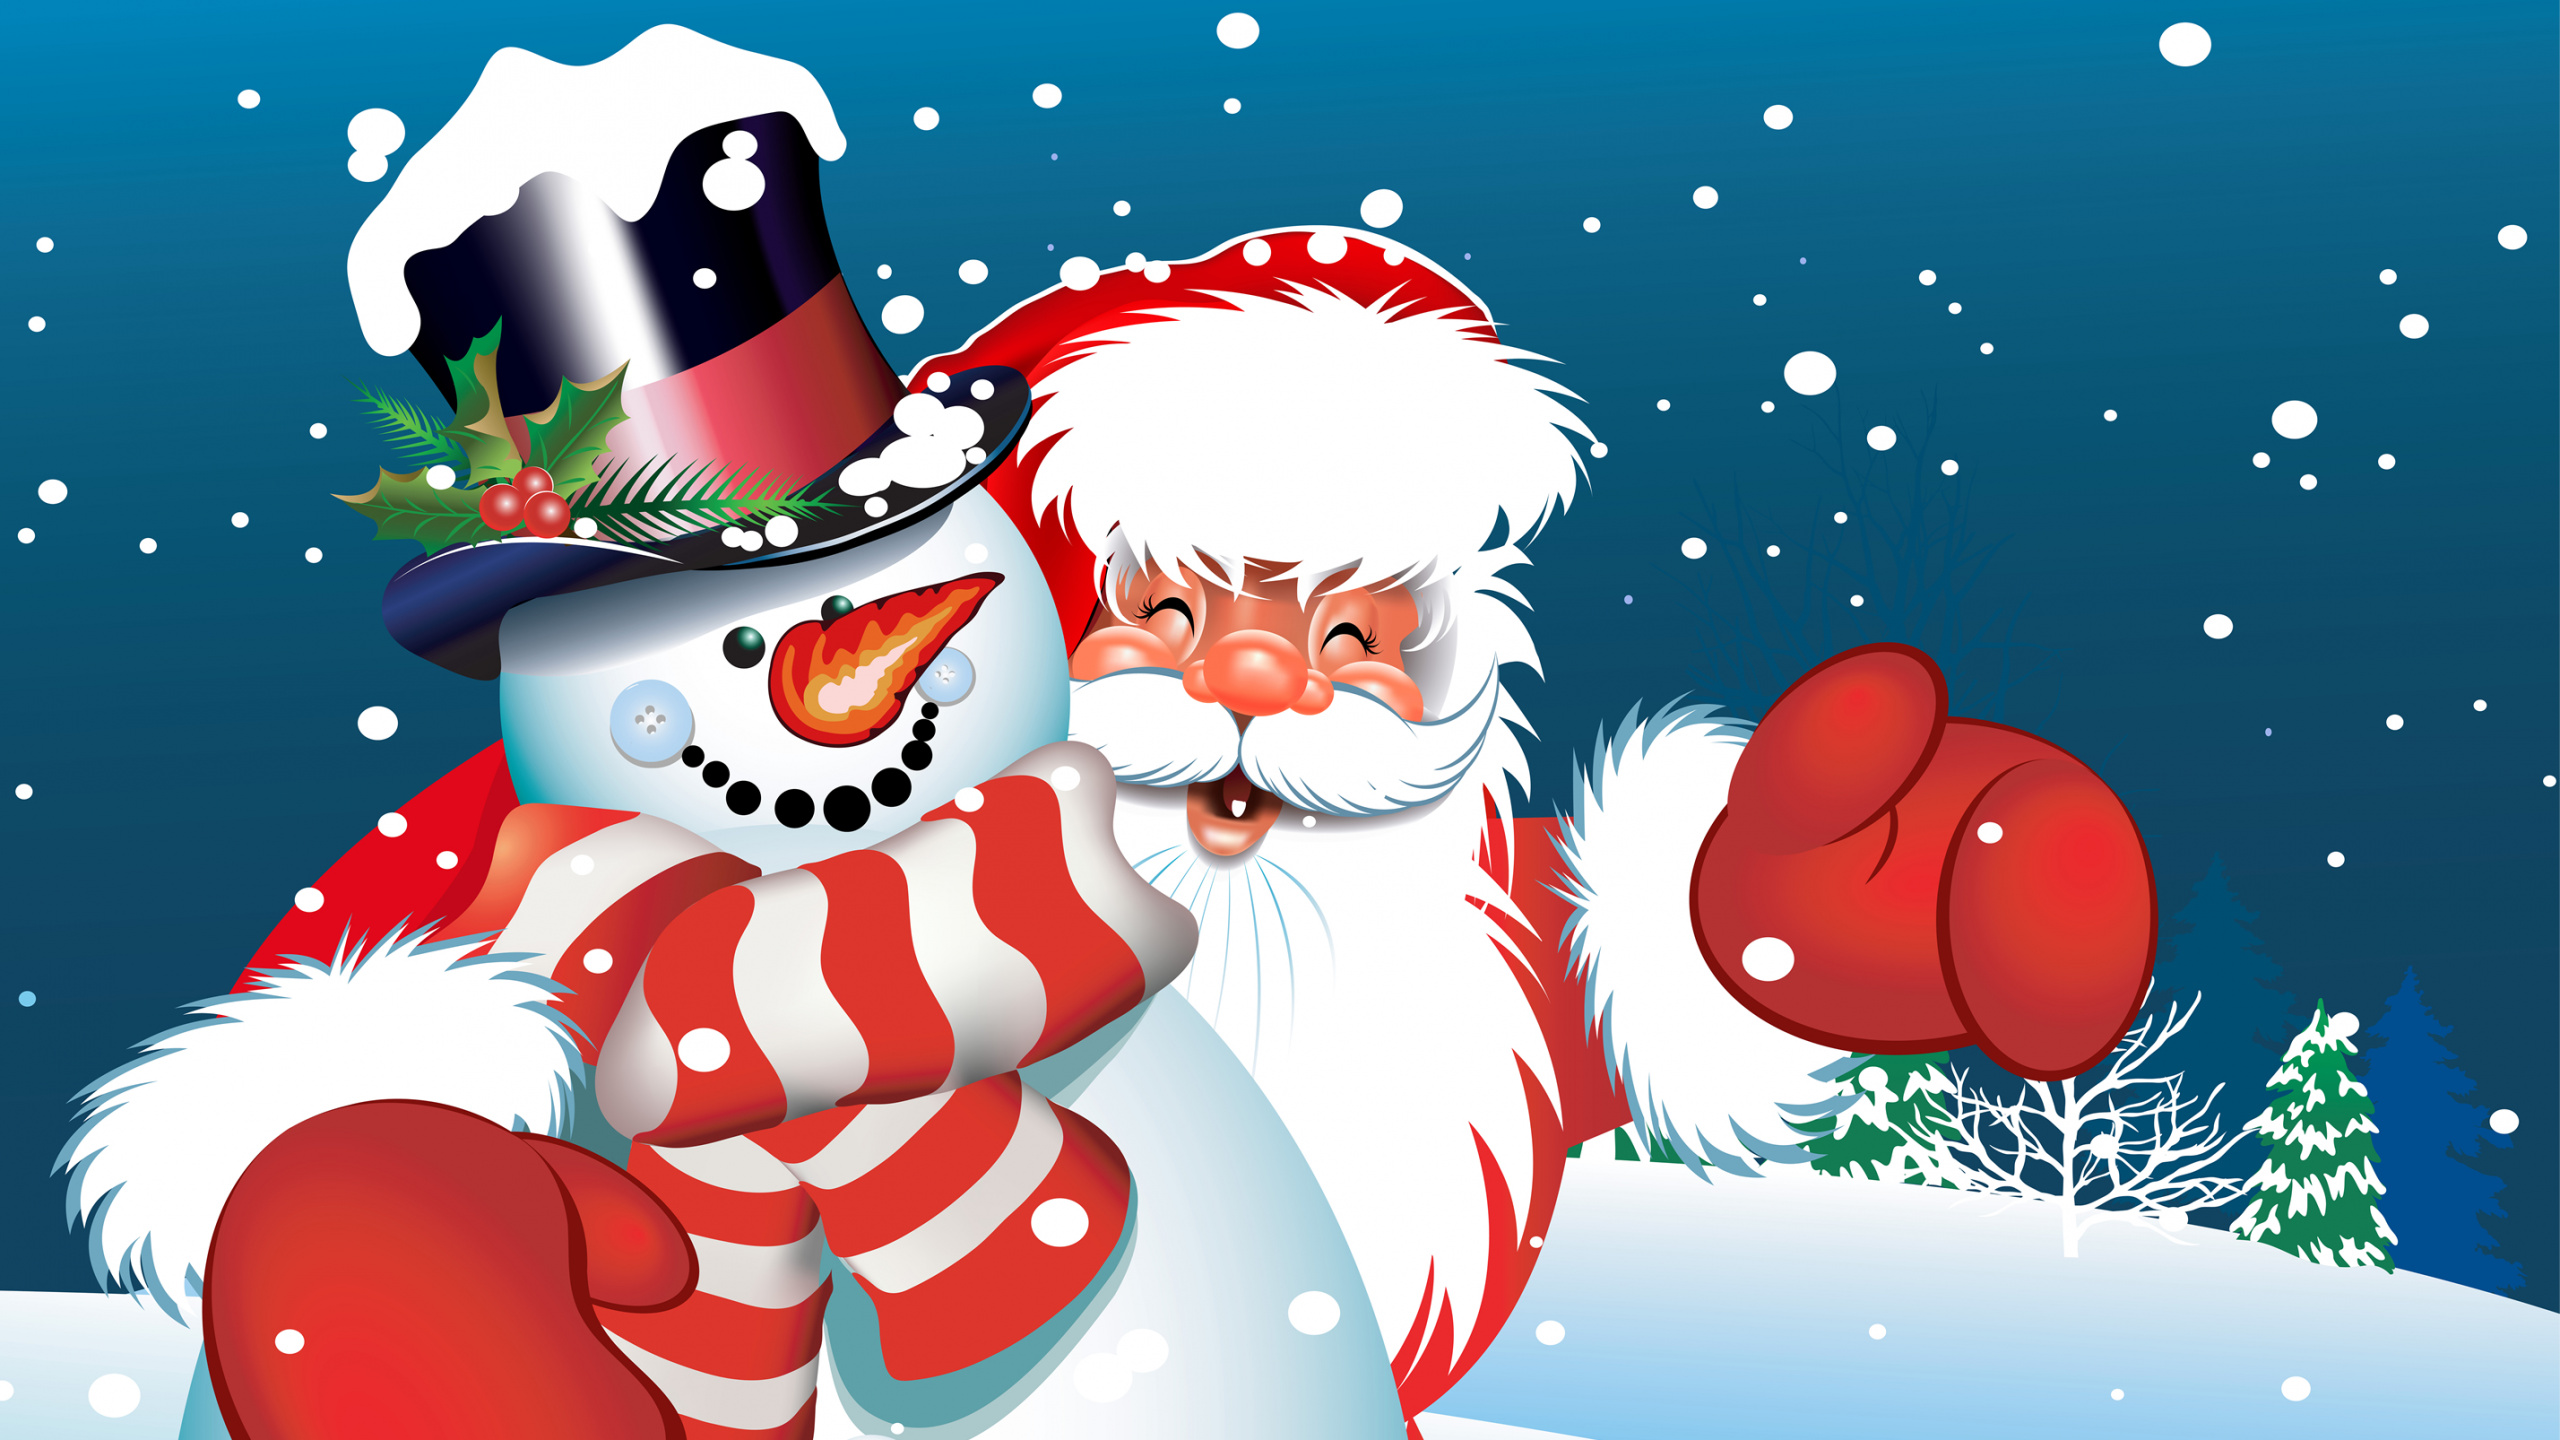 Santa Claus, Le Jour De Noël, Bonhomme, Cartoon, Illustration. Wallpaper in 2560x1440 Resolution